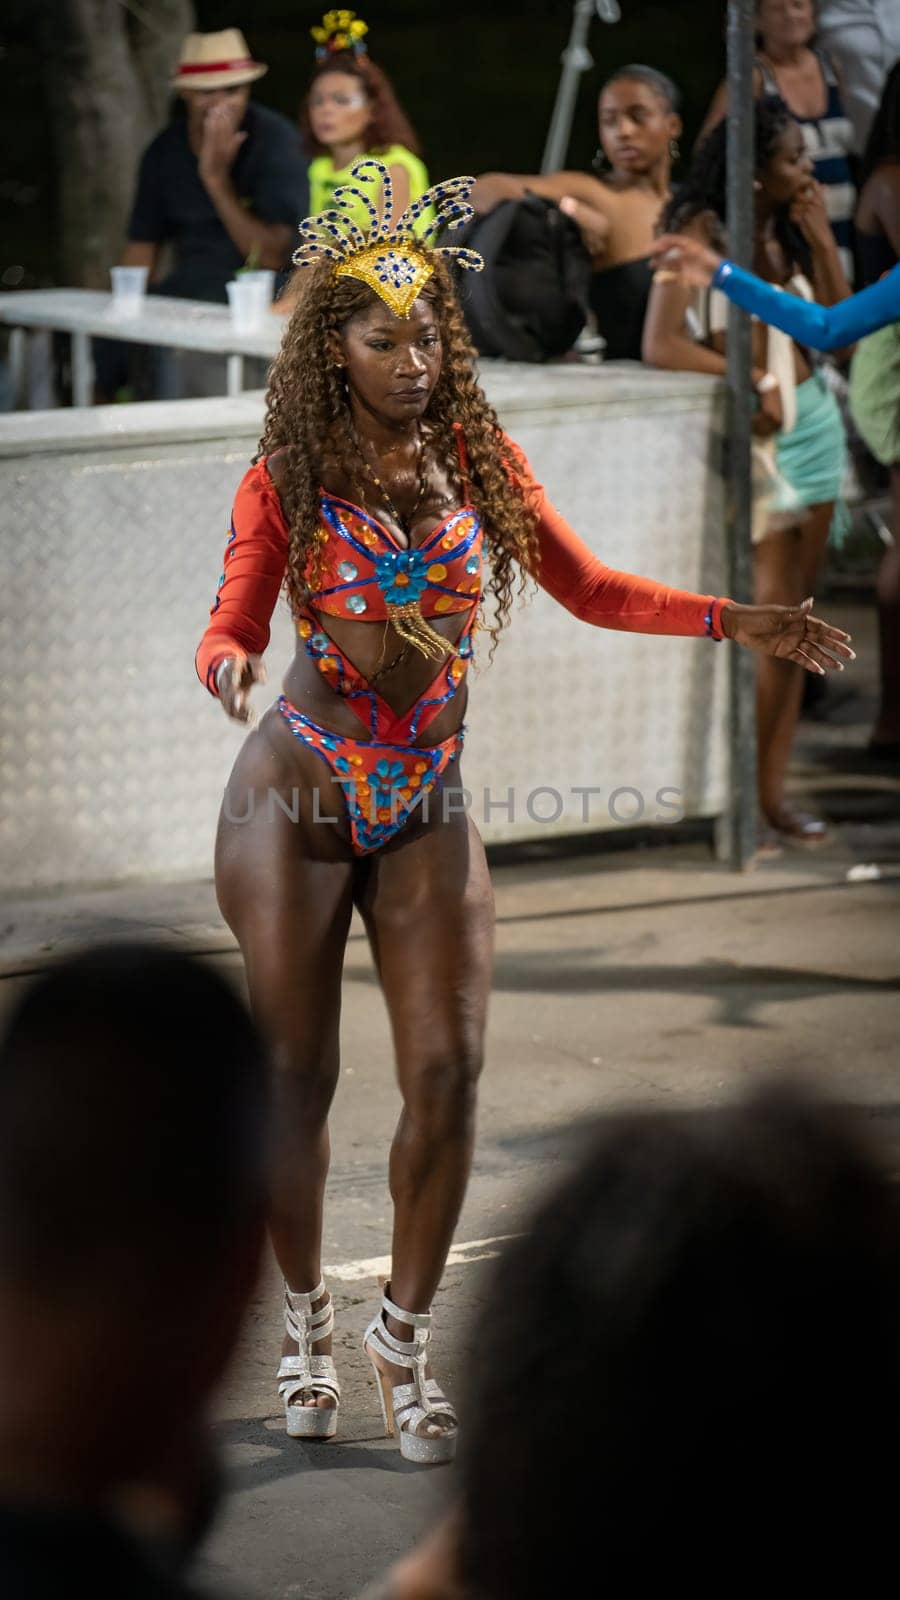 Performer in vibrant attire participates in a cultural festival in Juiz de Fora, Brazil, on Feb 21, 2023